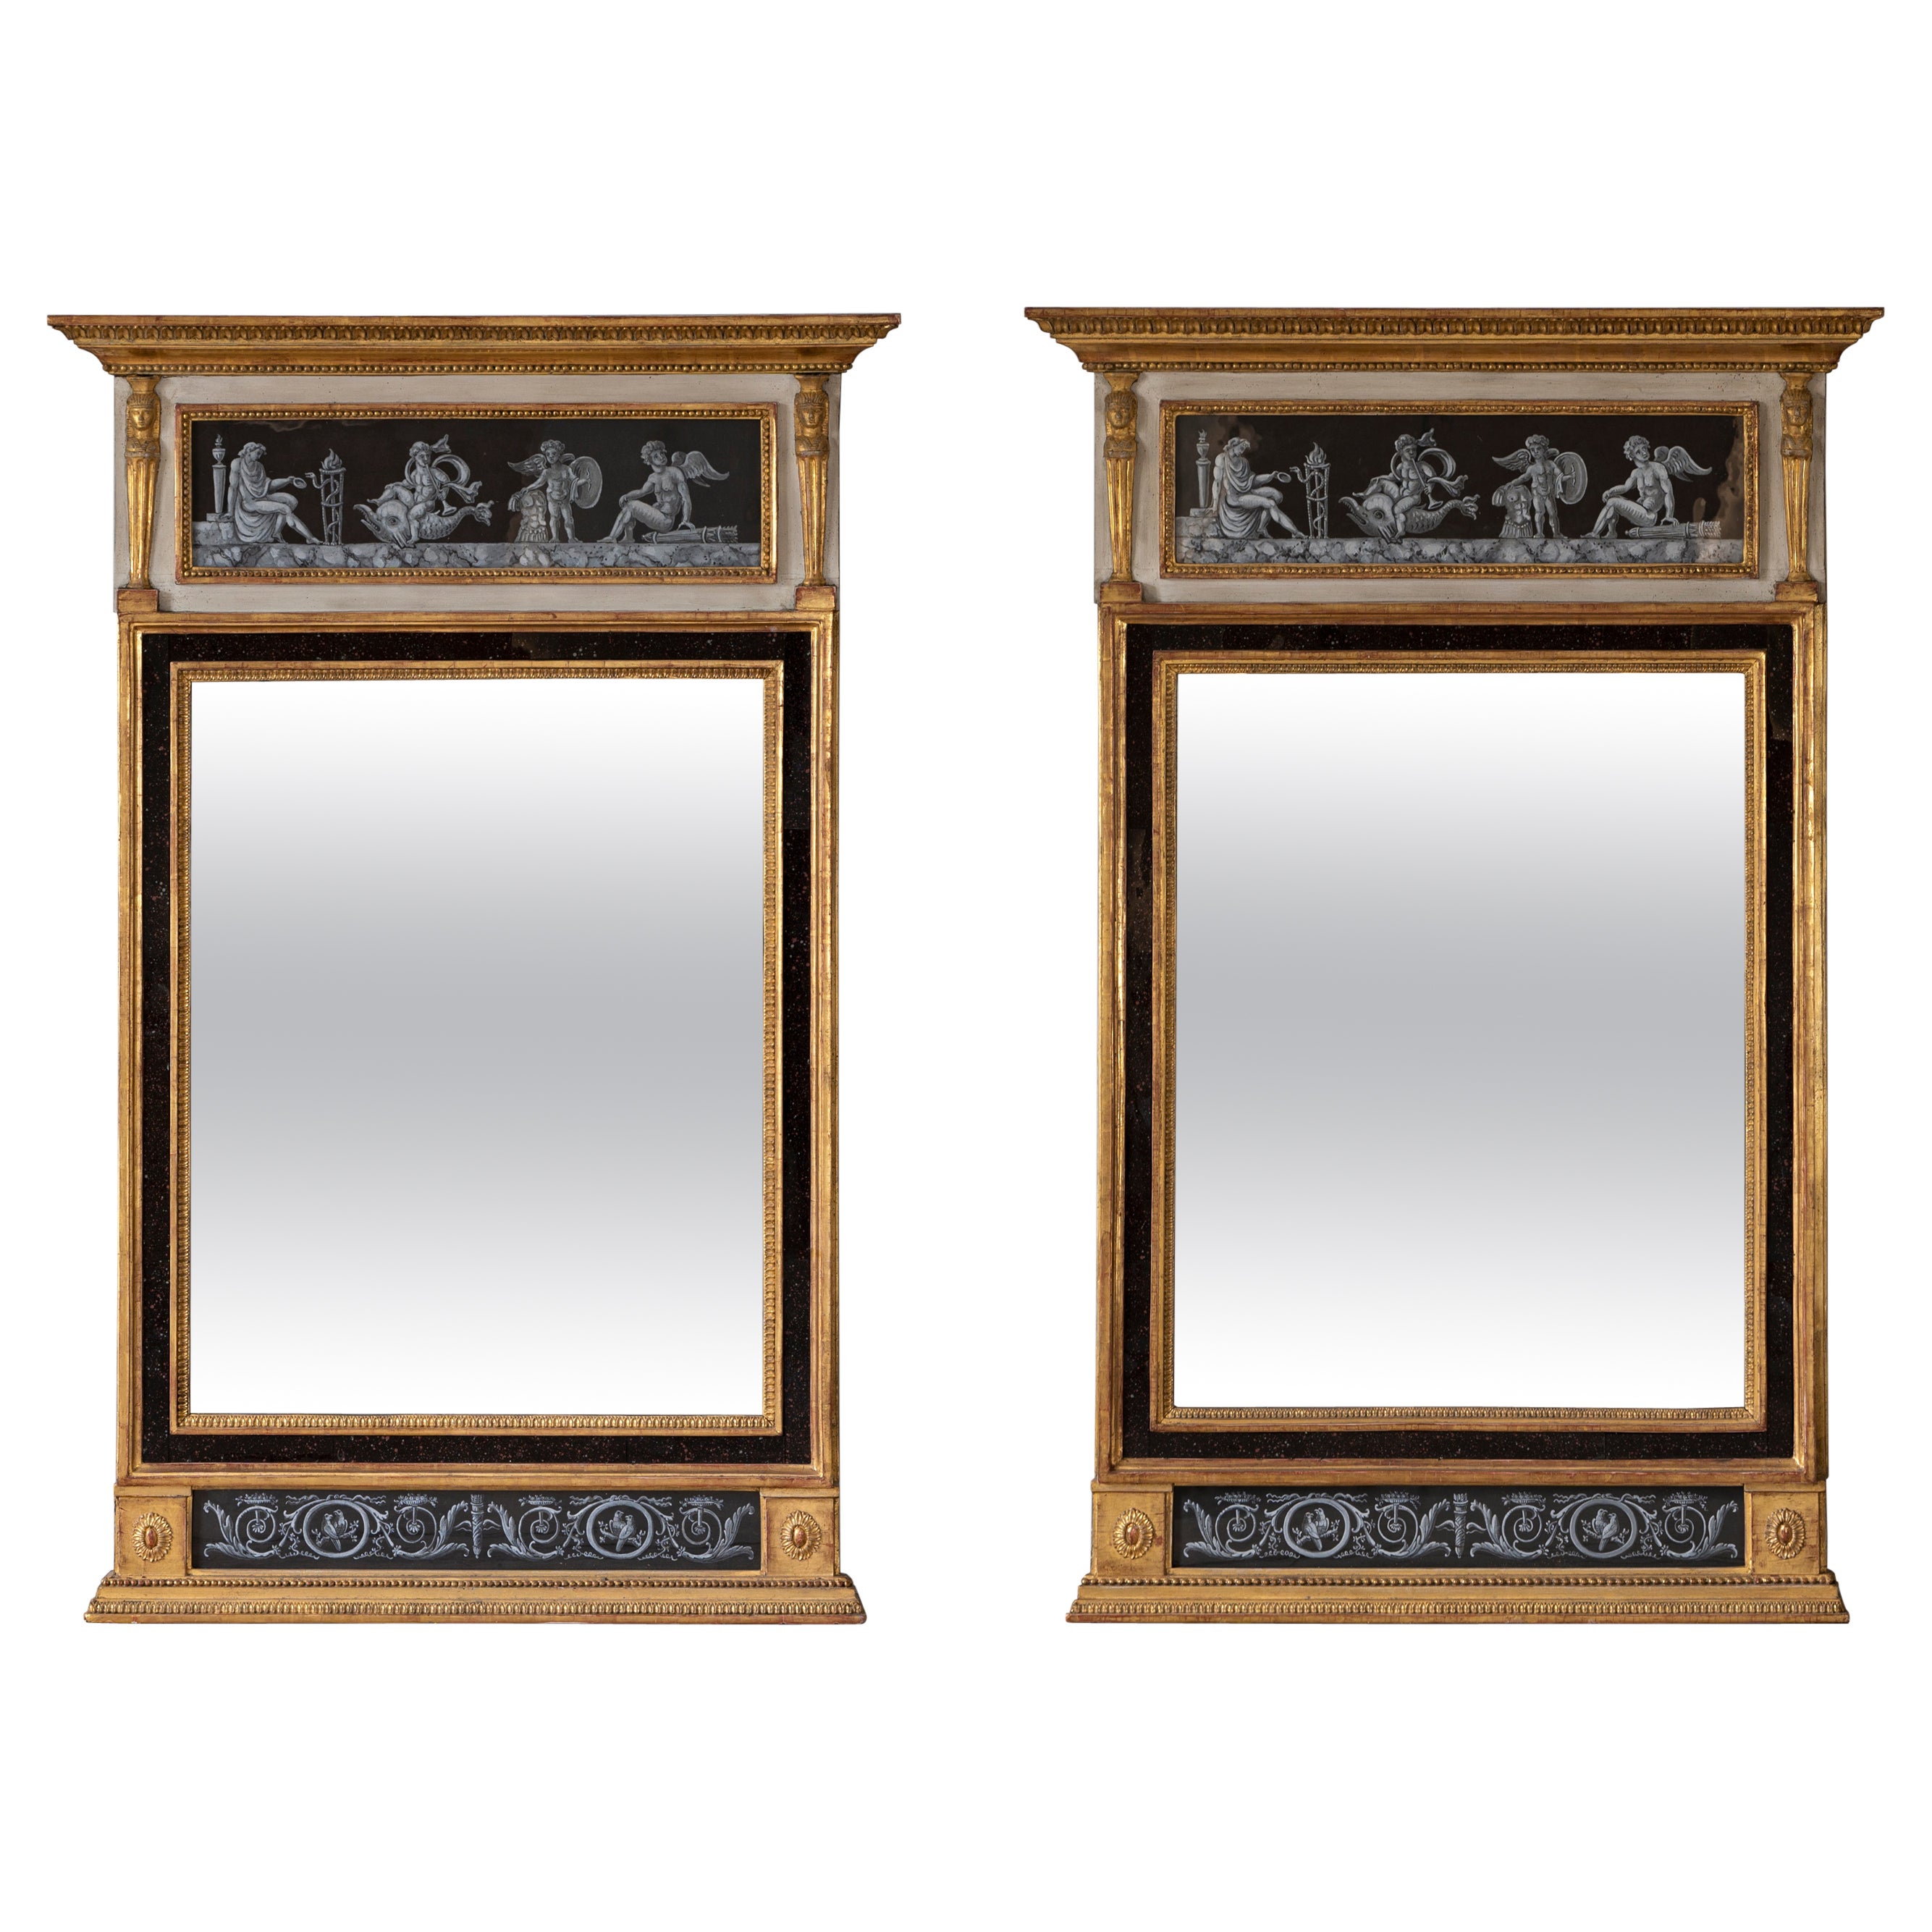 Exceptionnelle paire de miroirs gustaviens suédois en bois doré du 18ème siècle